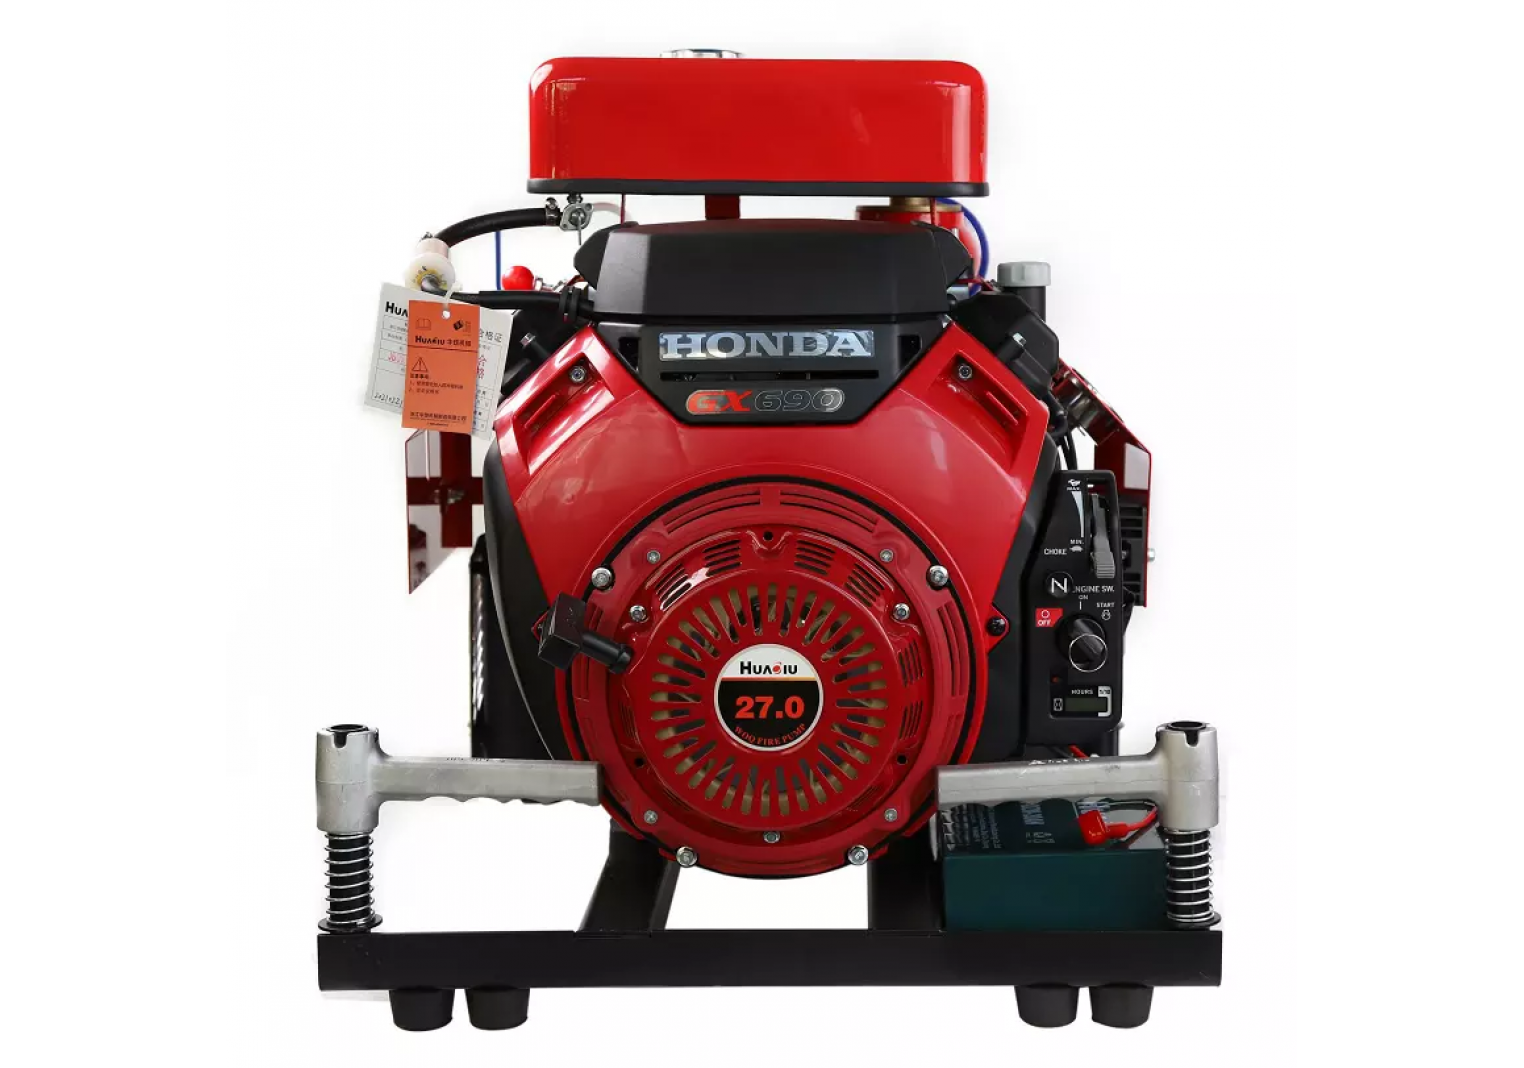 GX690 Honda Portable fire pump